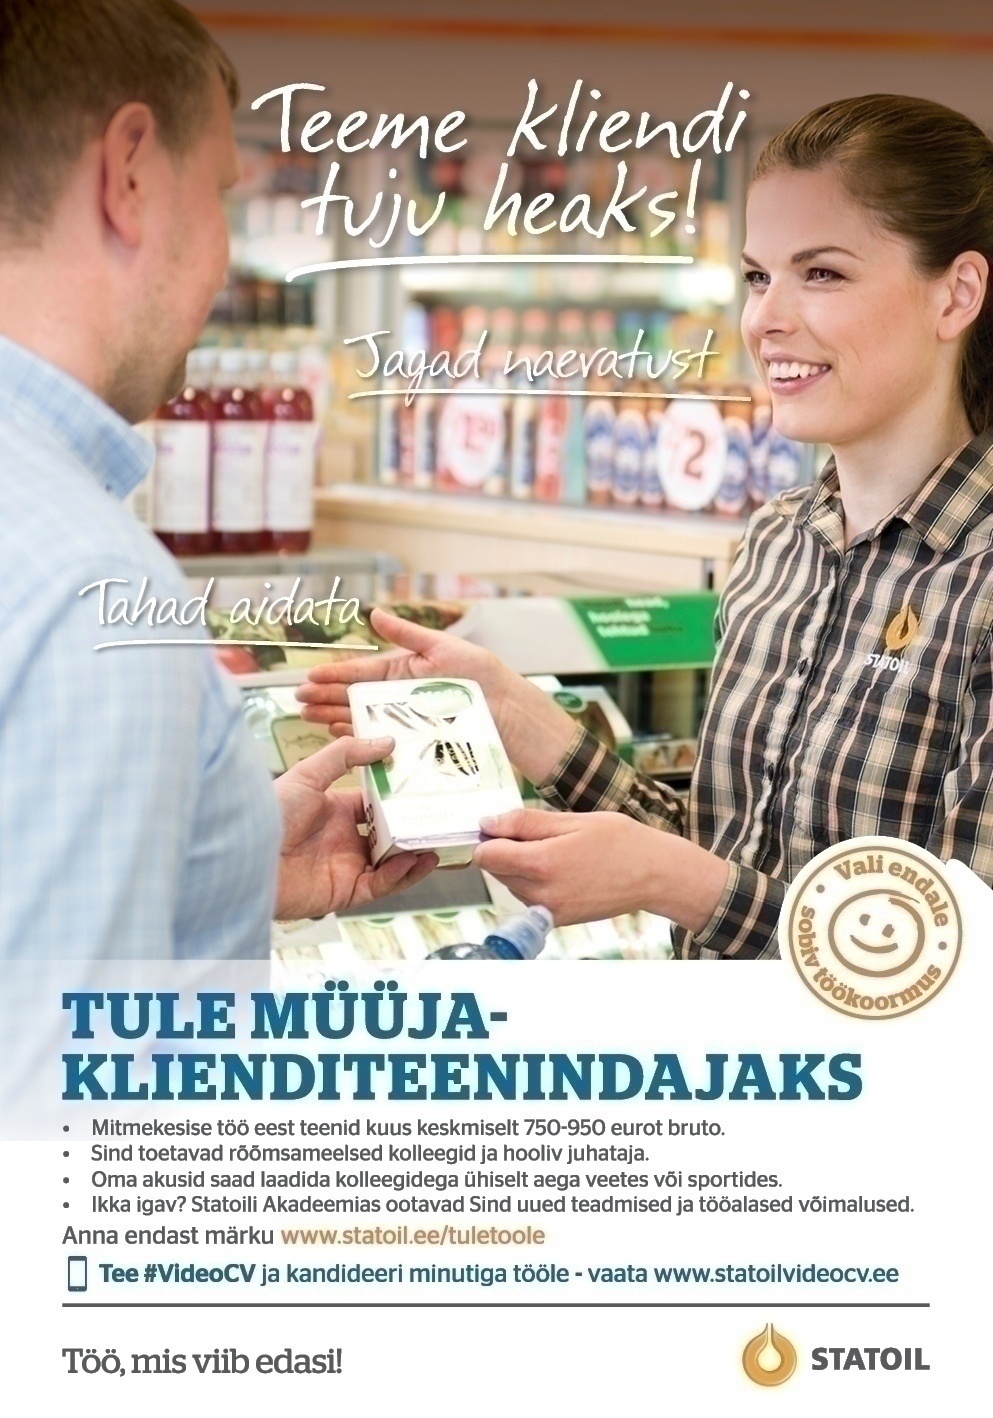 Circle K Eesti AS Müüja-klienditeenindaja Tallinna Õismäe teenindusjaama